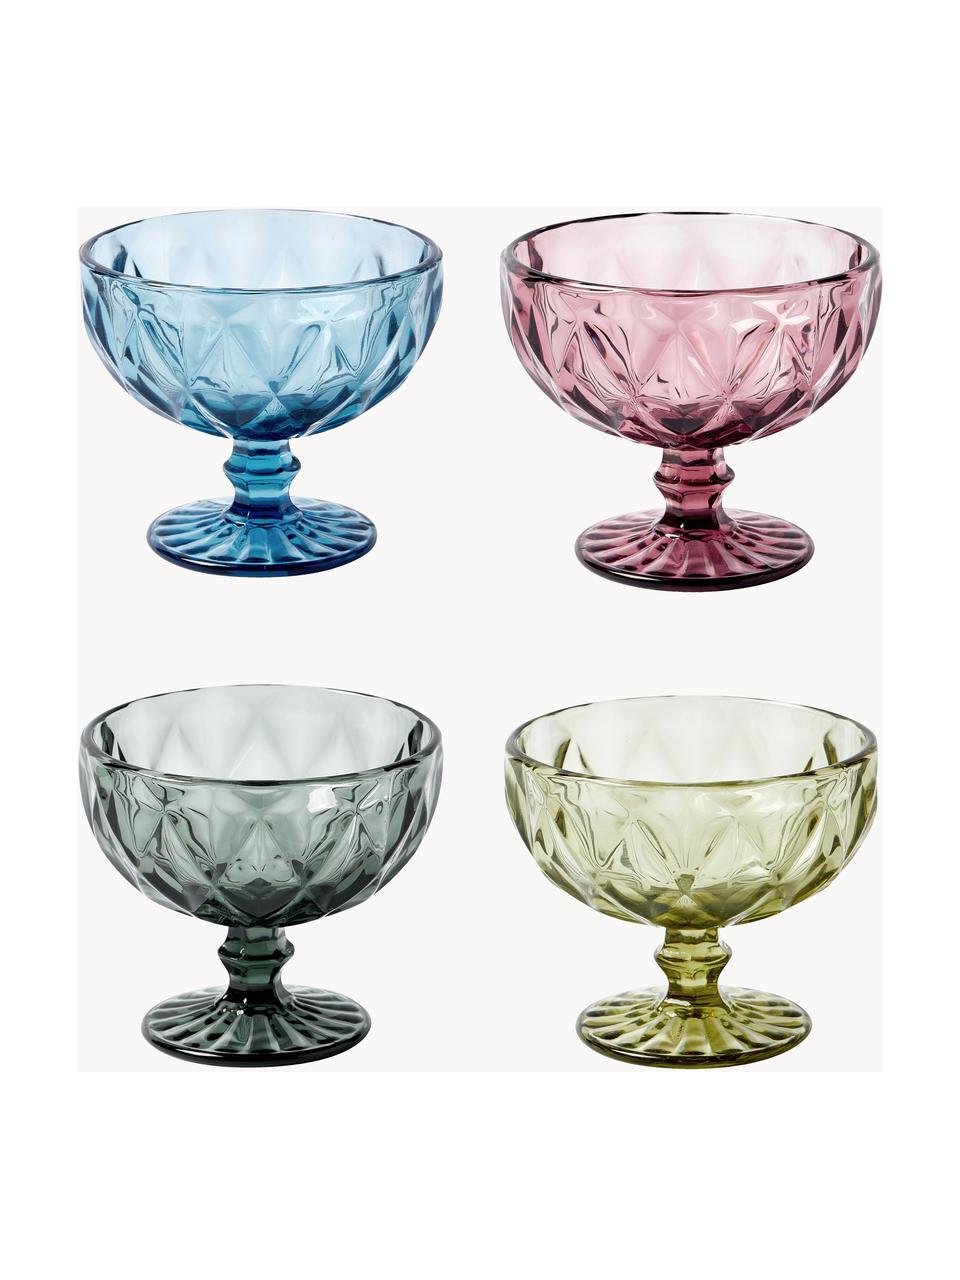 Súprava pohárov na kokteily Colorado, 4 ks, Sklo, Modrá, tmavoružová, sivá, zelená, Ø 12 x V 10 cm, 260 ml